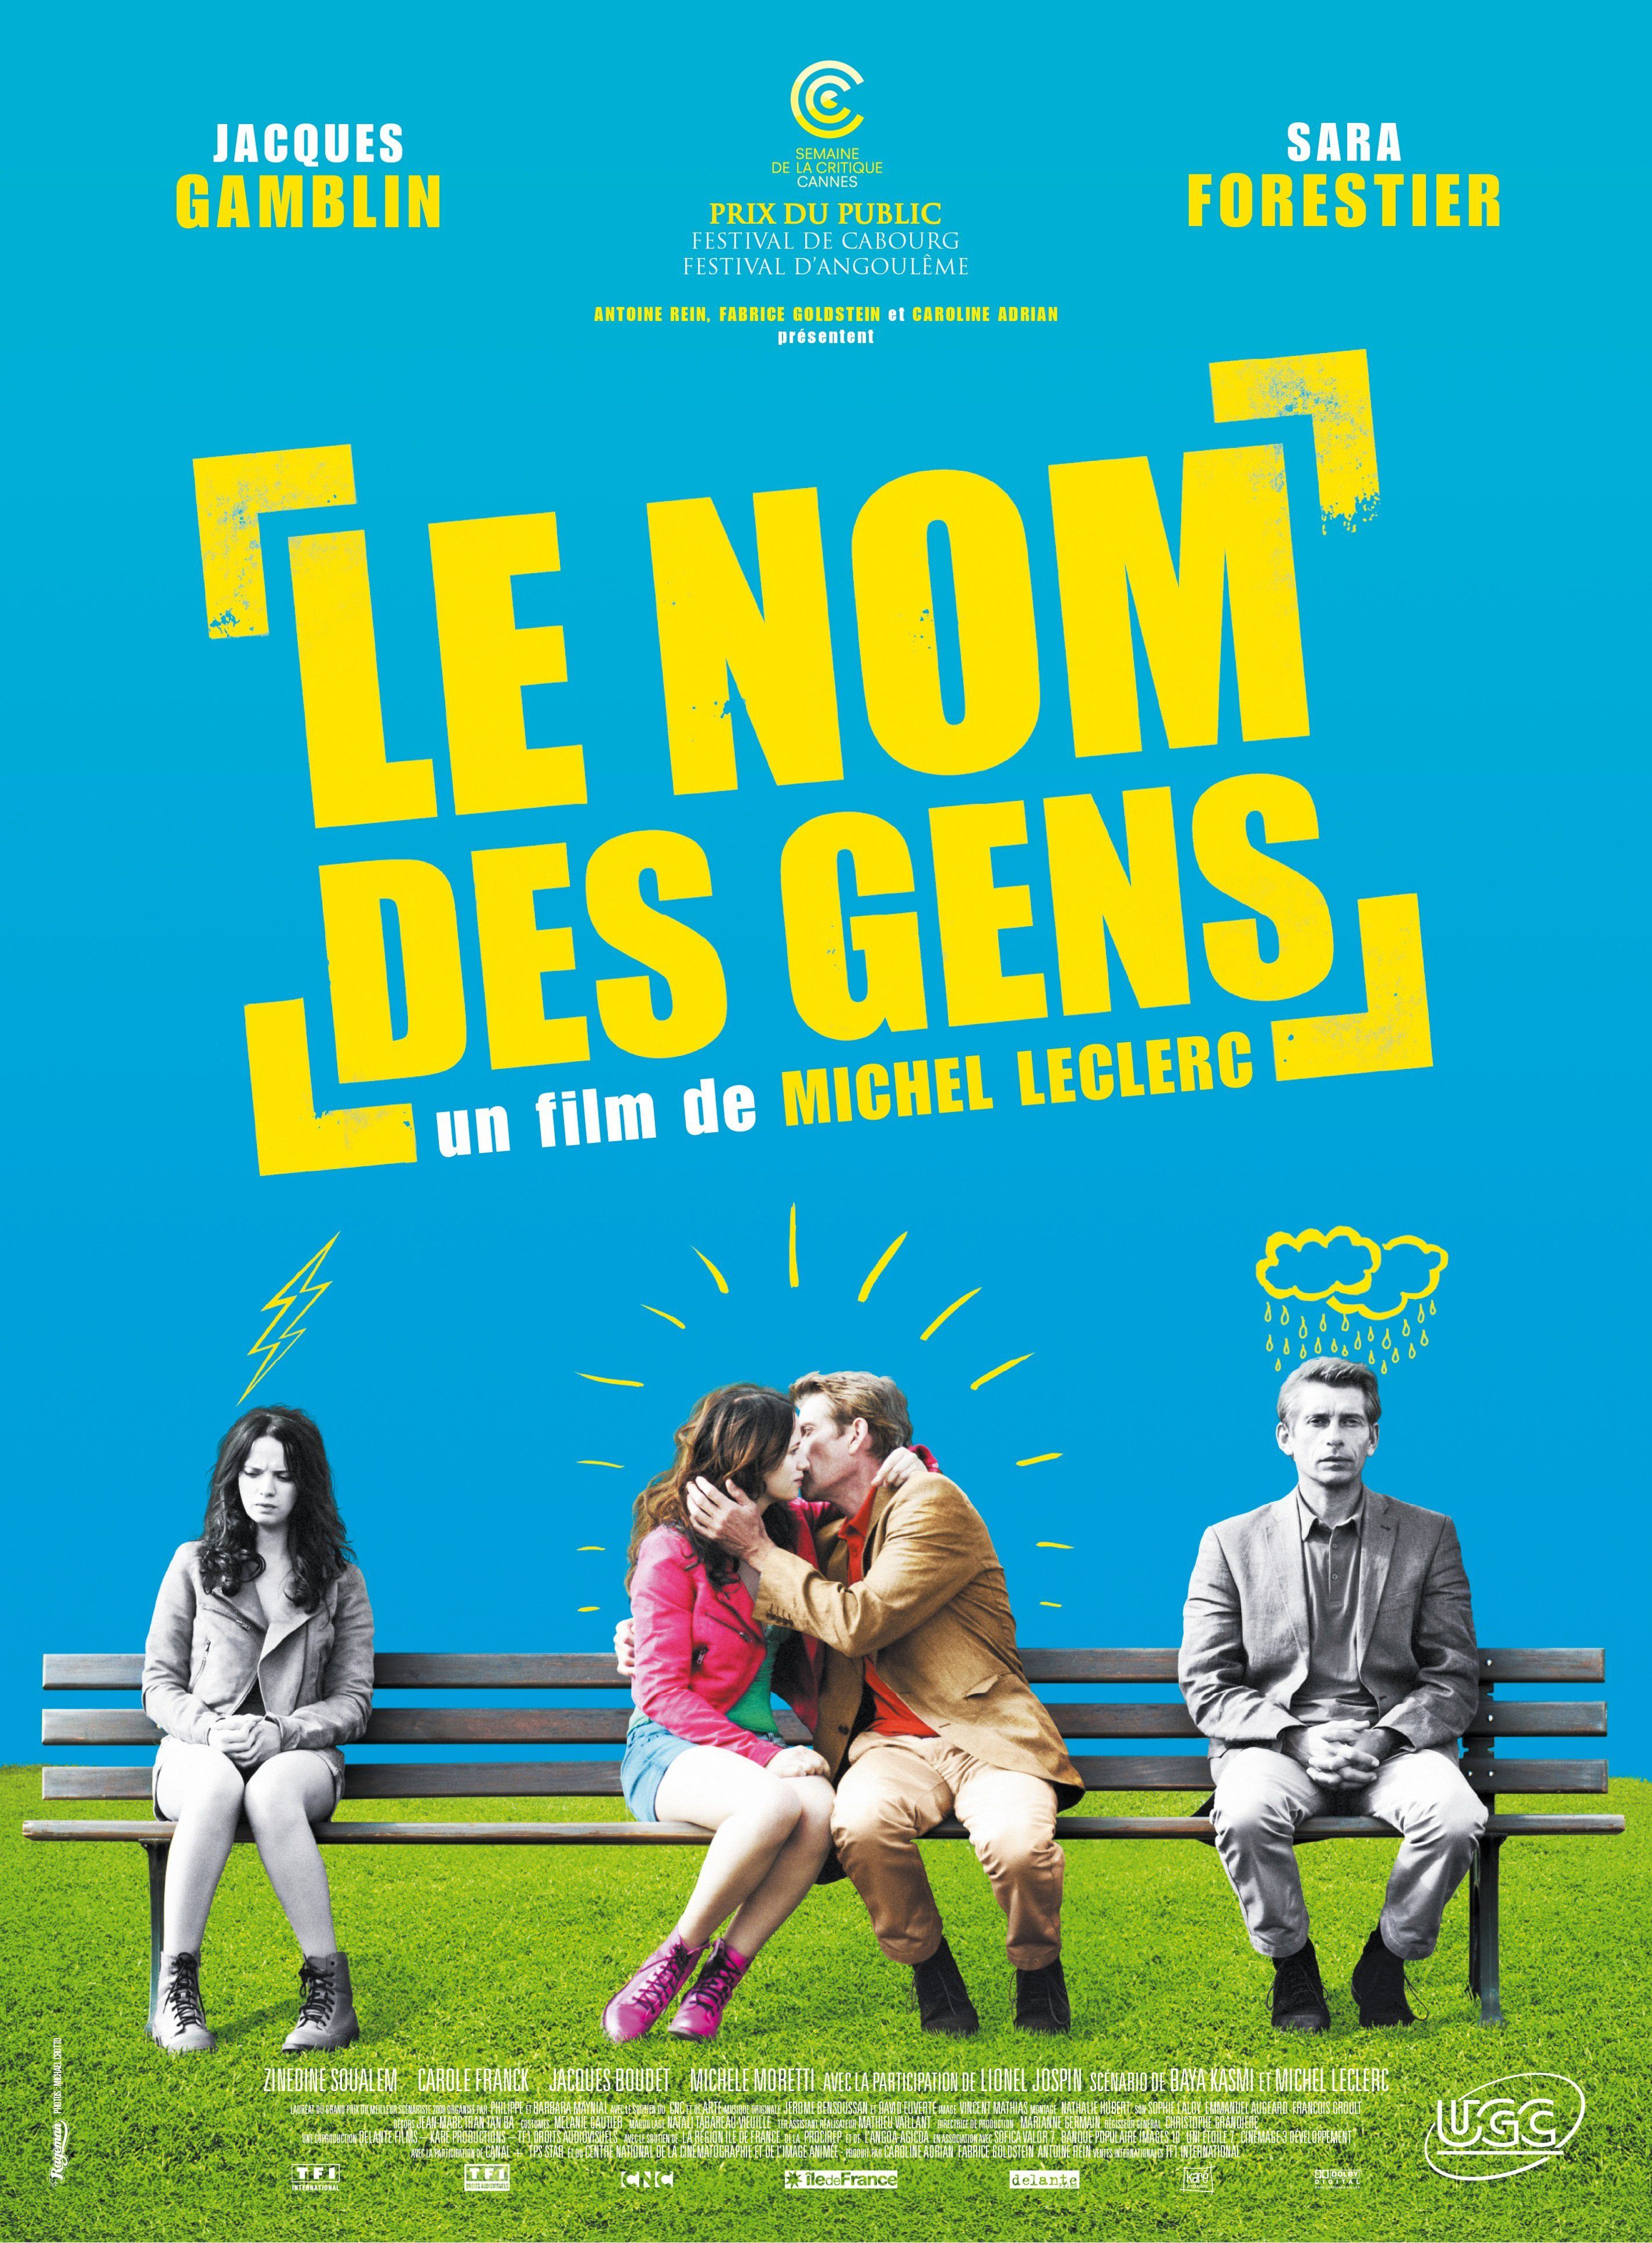 Le Nom des gens - Film (2010) streaming VF gratuit complet